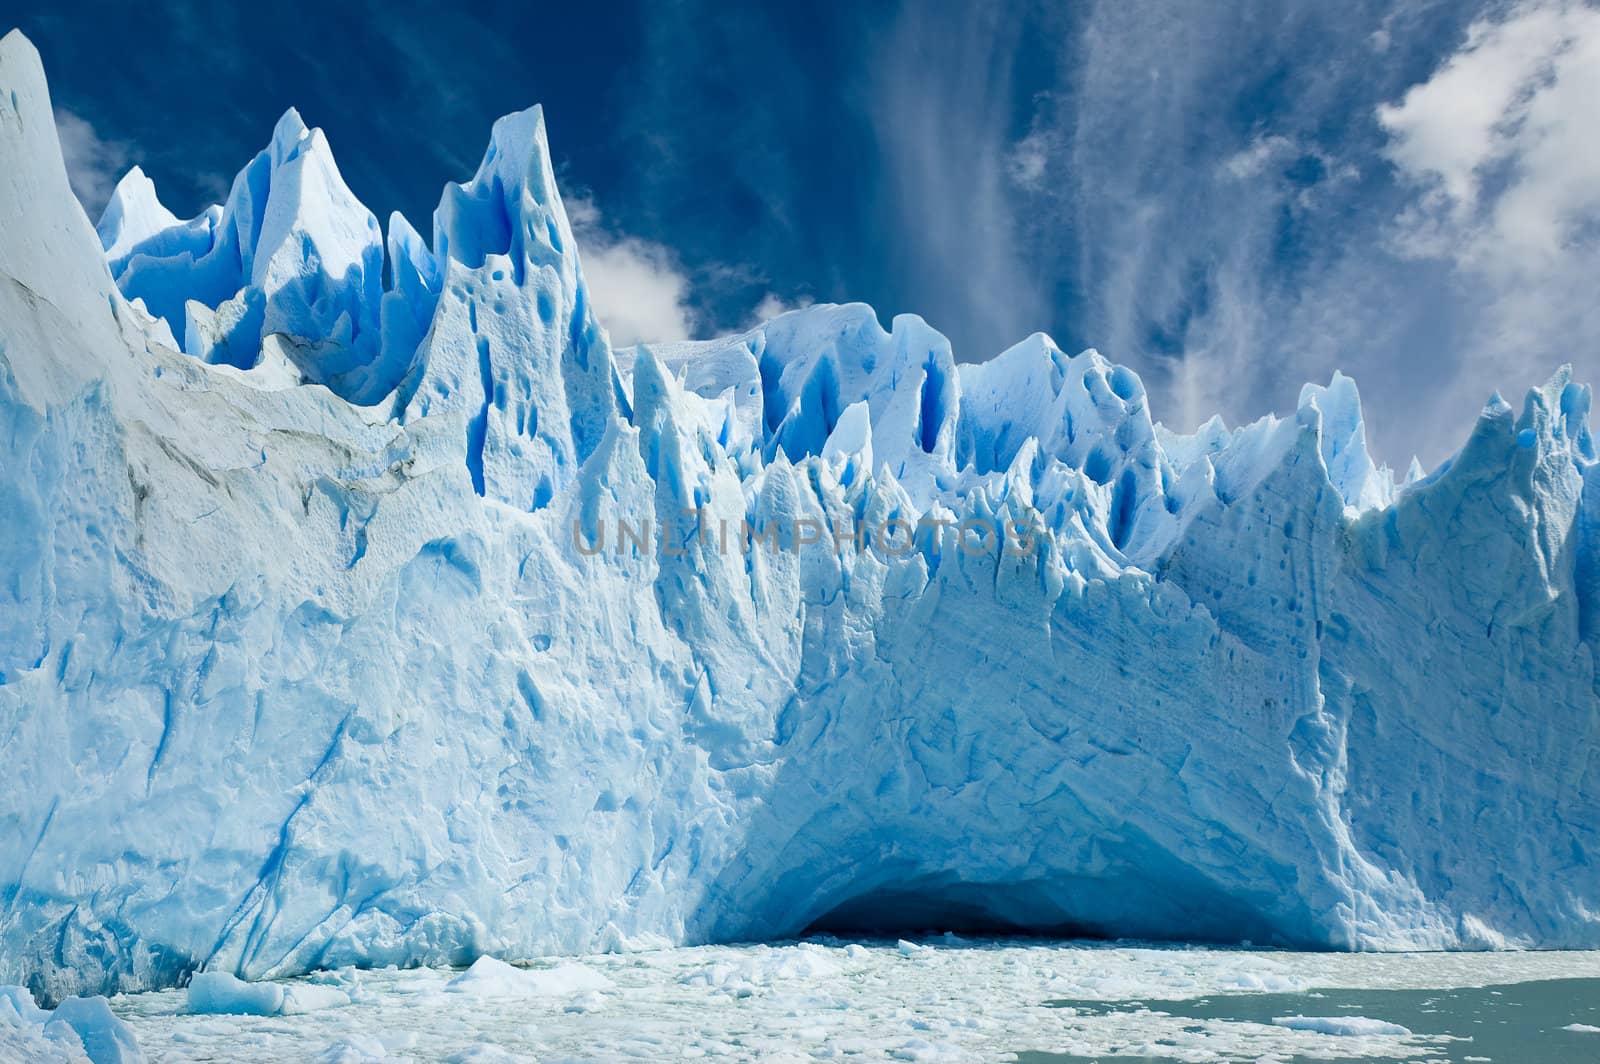 Perito Moreno glacier, Patagonia Argentina. by elnavegante